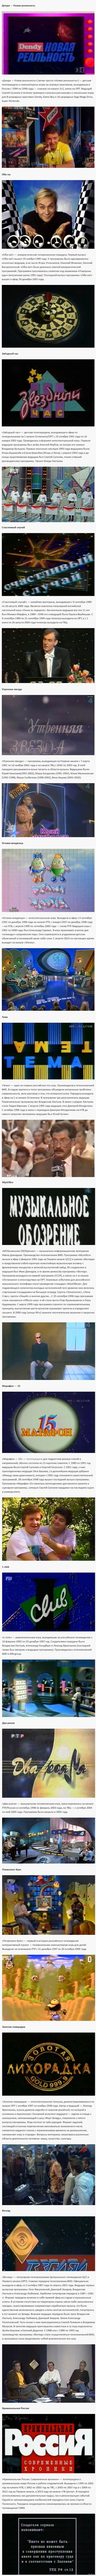 . .  90-    <a href="http://pikabu.ru/story/nostalzhi_teleperadachi_90kh_godov_2633719#comments">http://pikabu.ru/story/_2633719</a>